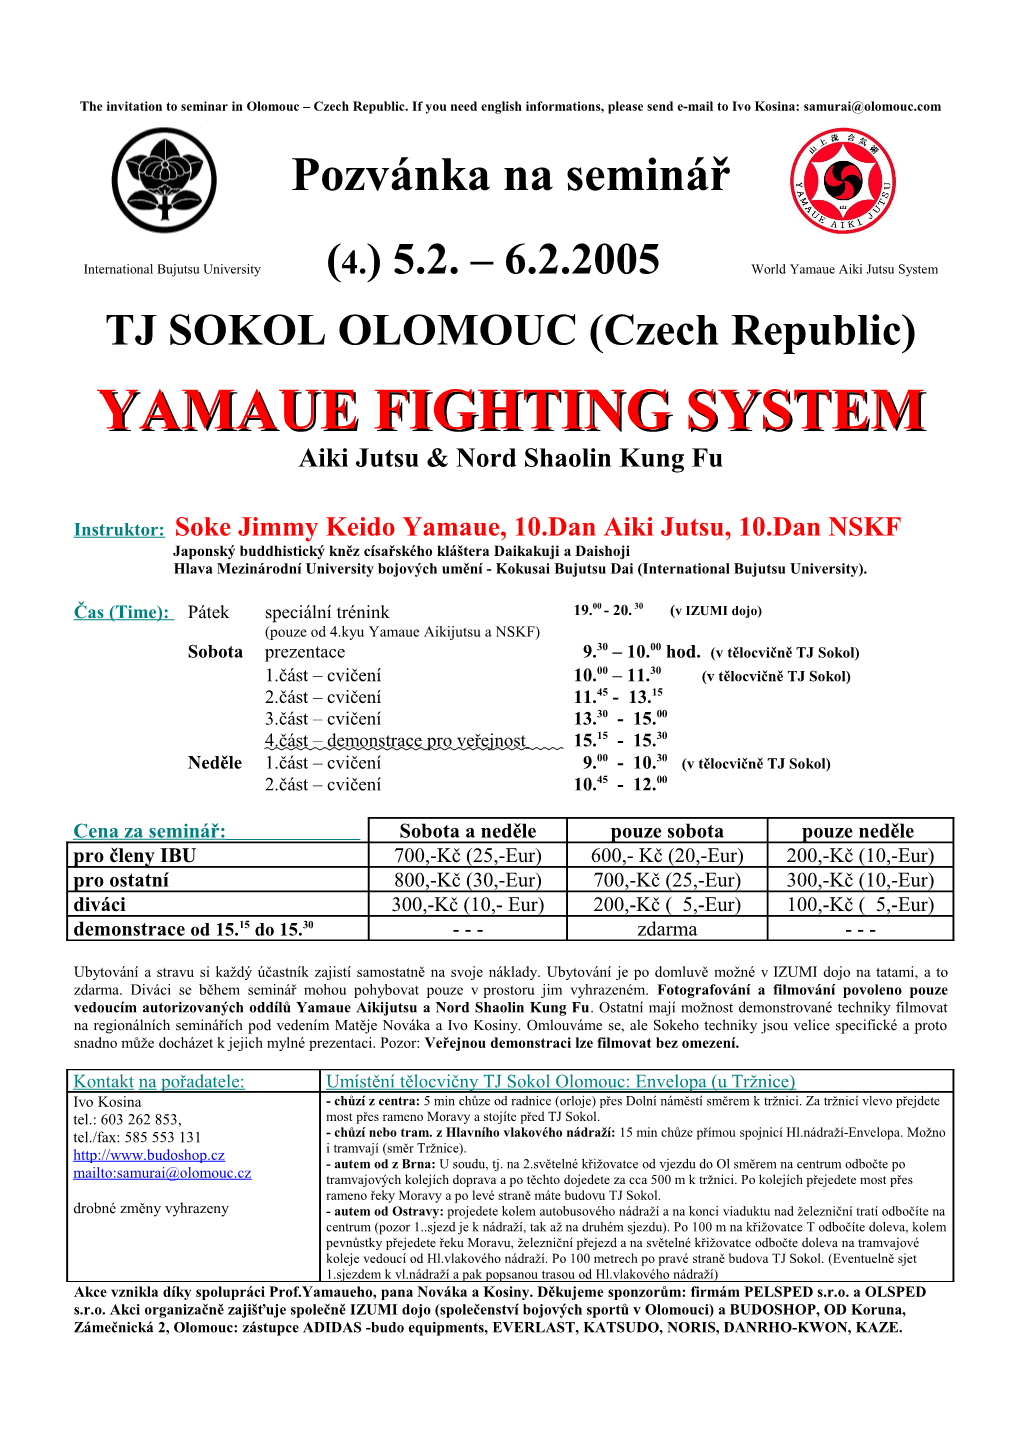 International Bujutsu University (4.) 5.2. 6.2.2005 World Yamaue Aiki Jutsu System